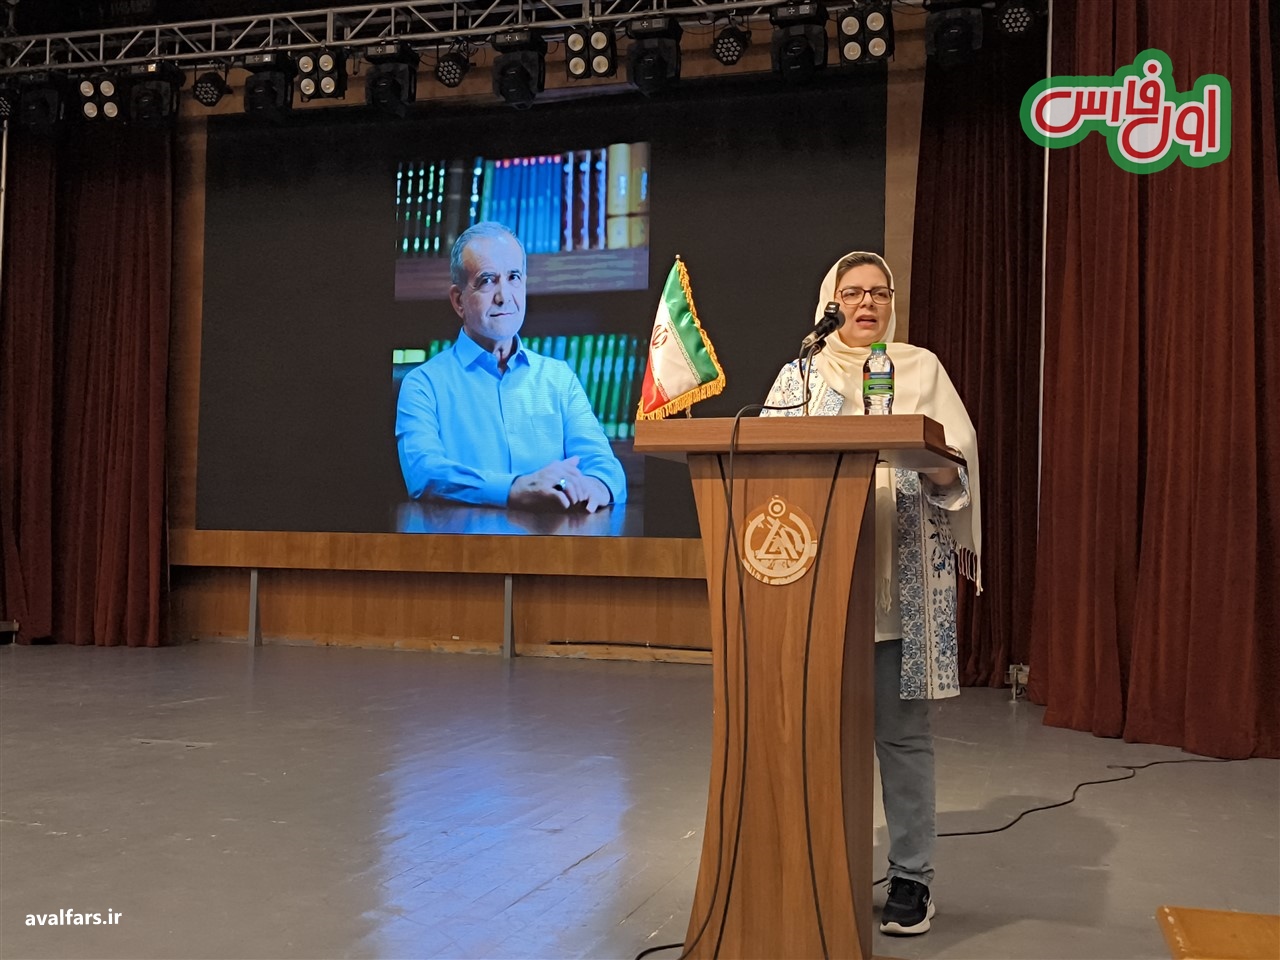 رییس کمیته بانوان ستاد دکتر پزشکیان در استان فارس: پیام ما مطالبه تغییر به روشی مدنی ، مسالمت آمیز و مصلحانه است